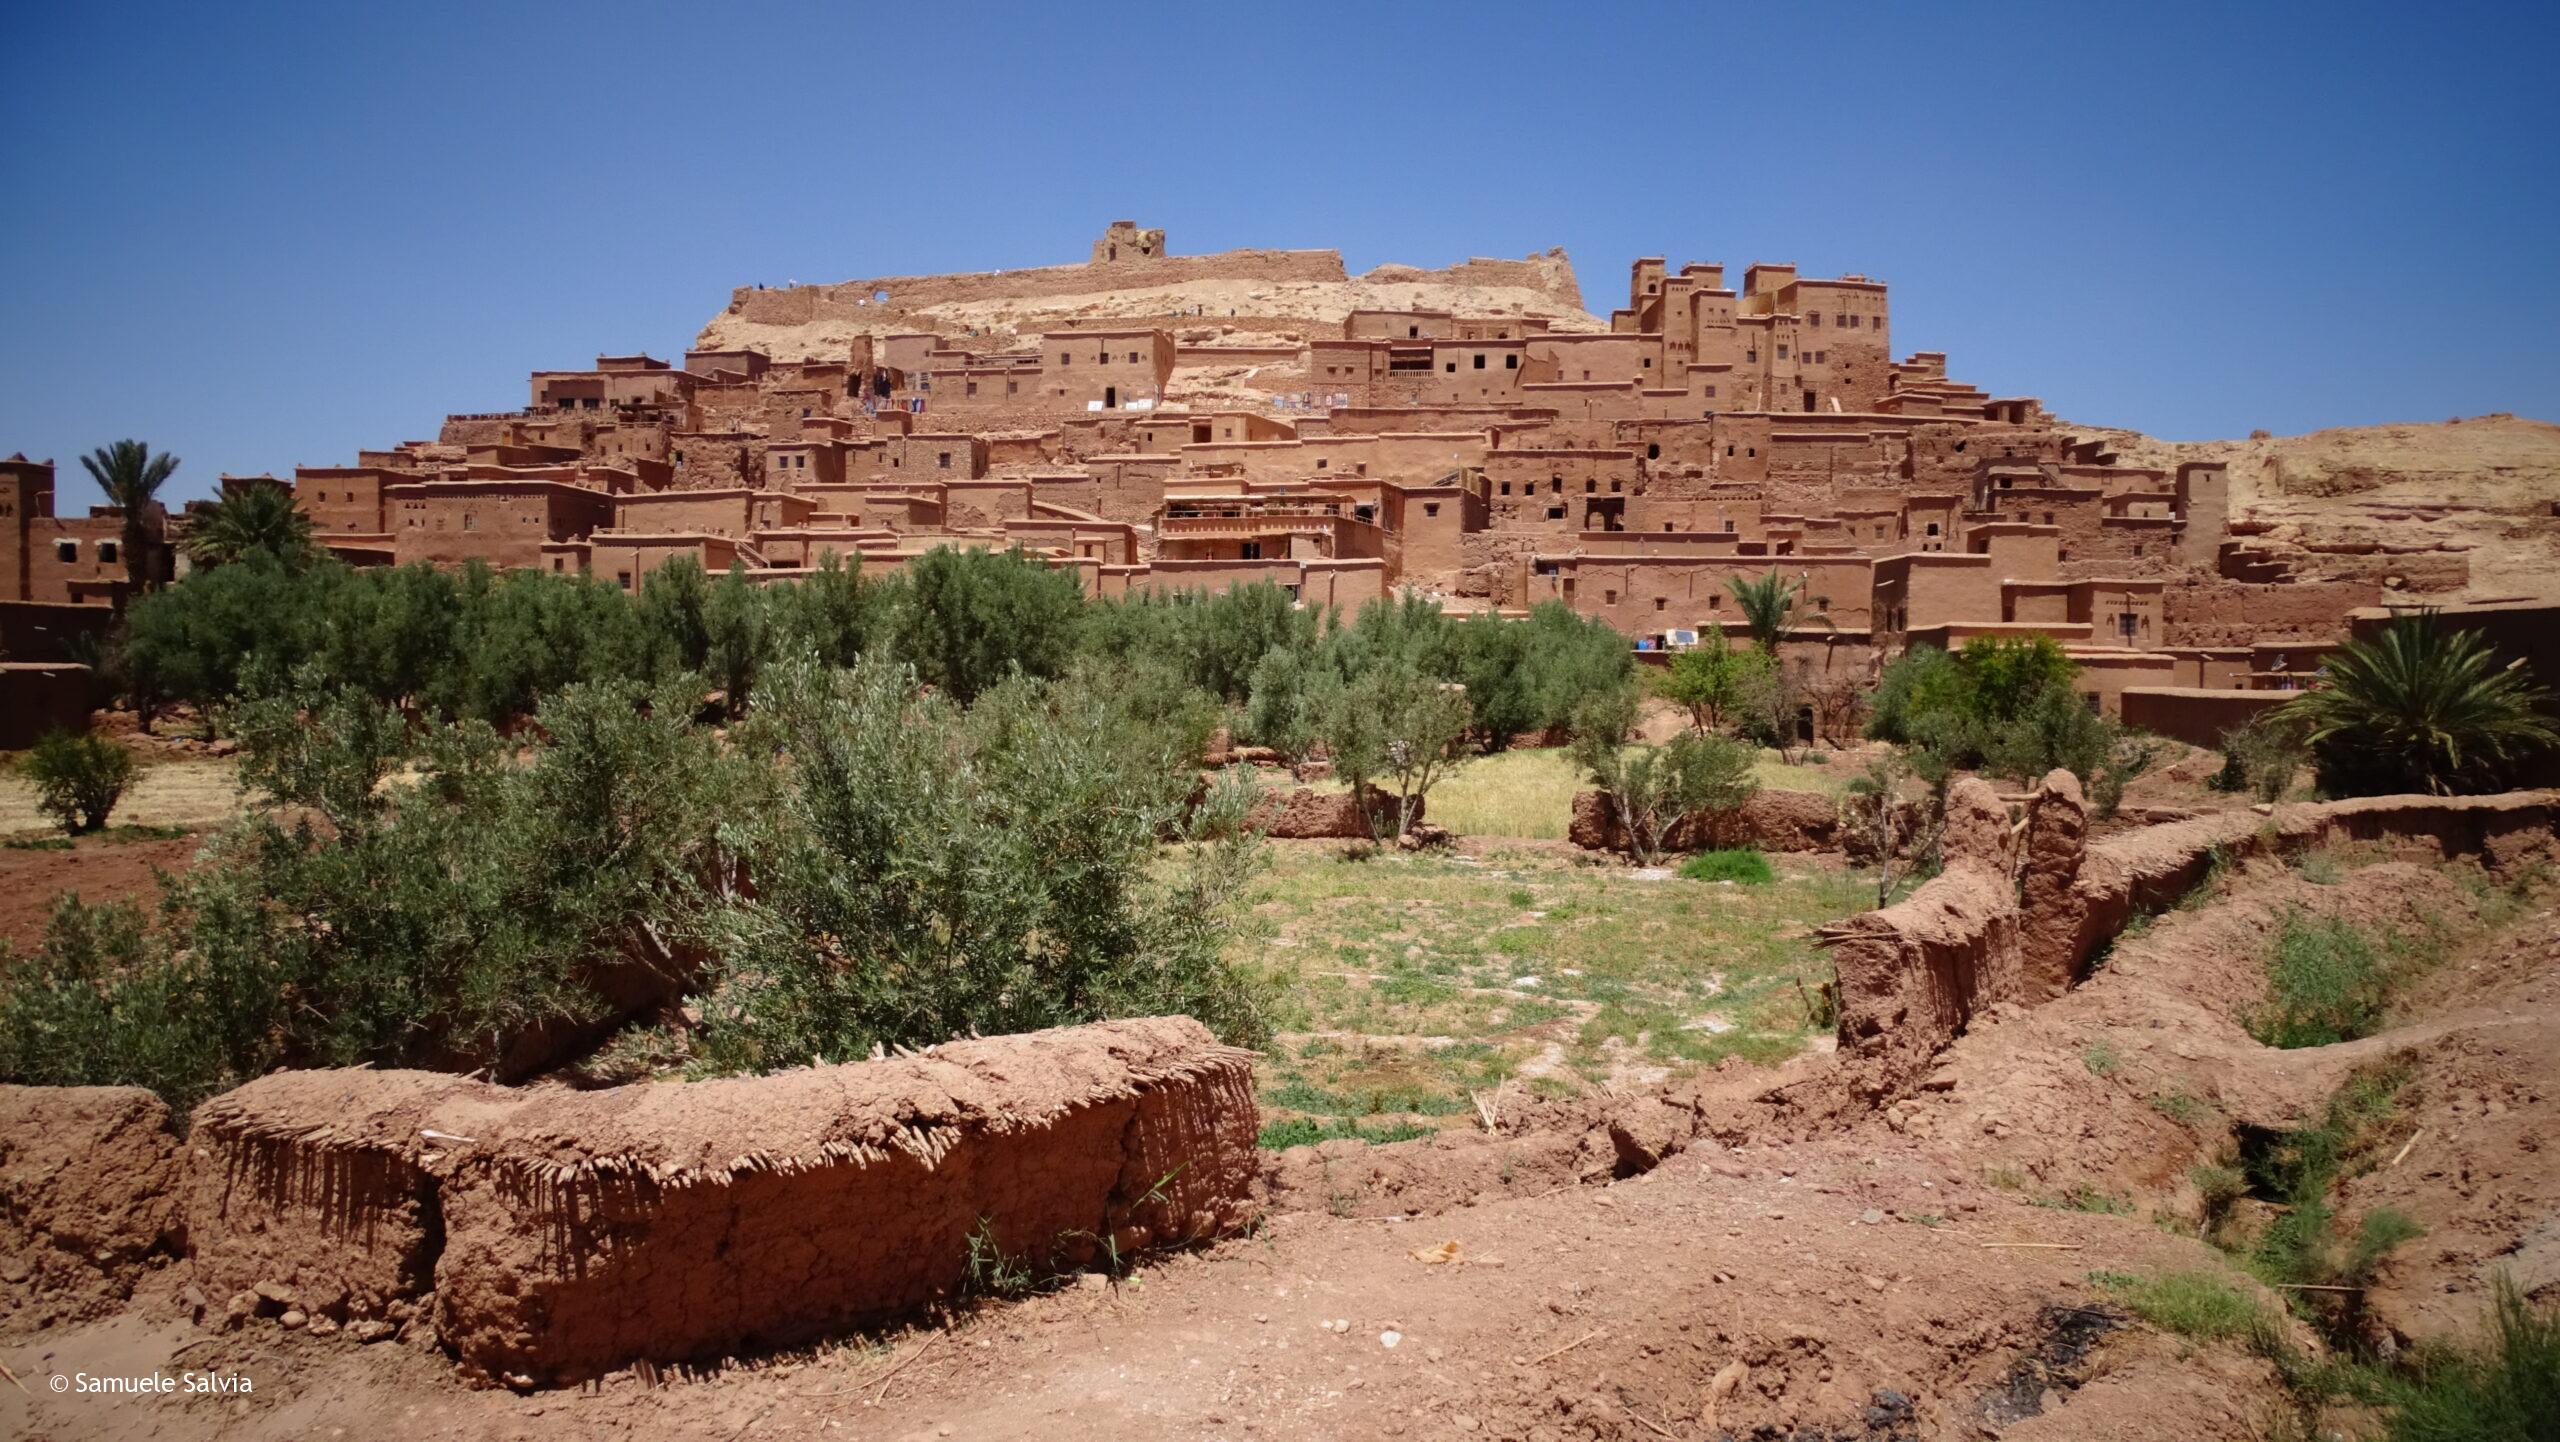 Il villaggio di Aït Ben Haddou è un perfetto esempio di ksar, le città fortificate tipiche della tradizione berbera.